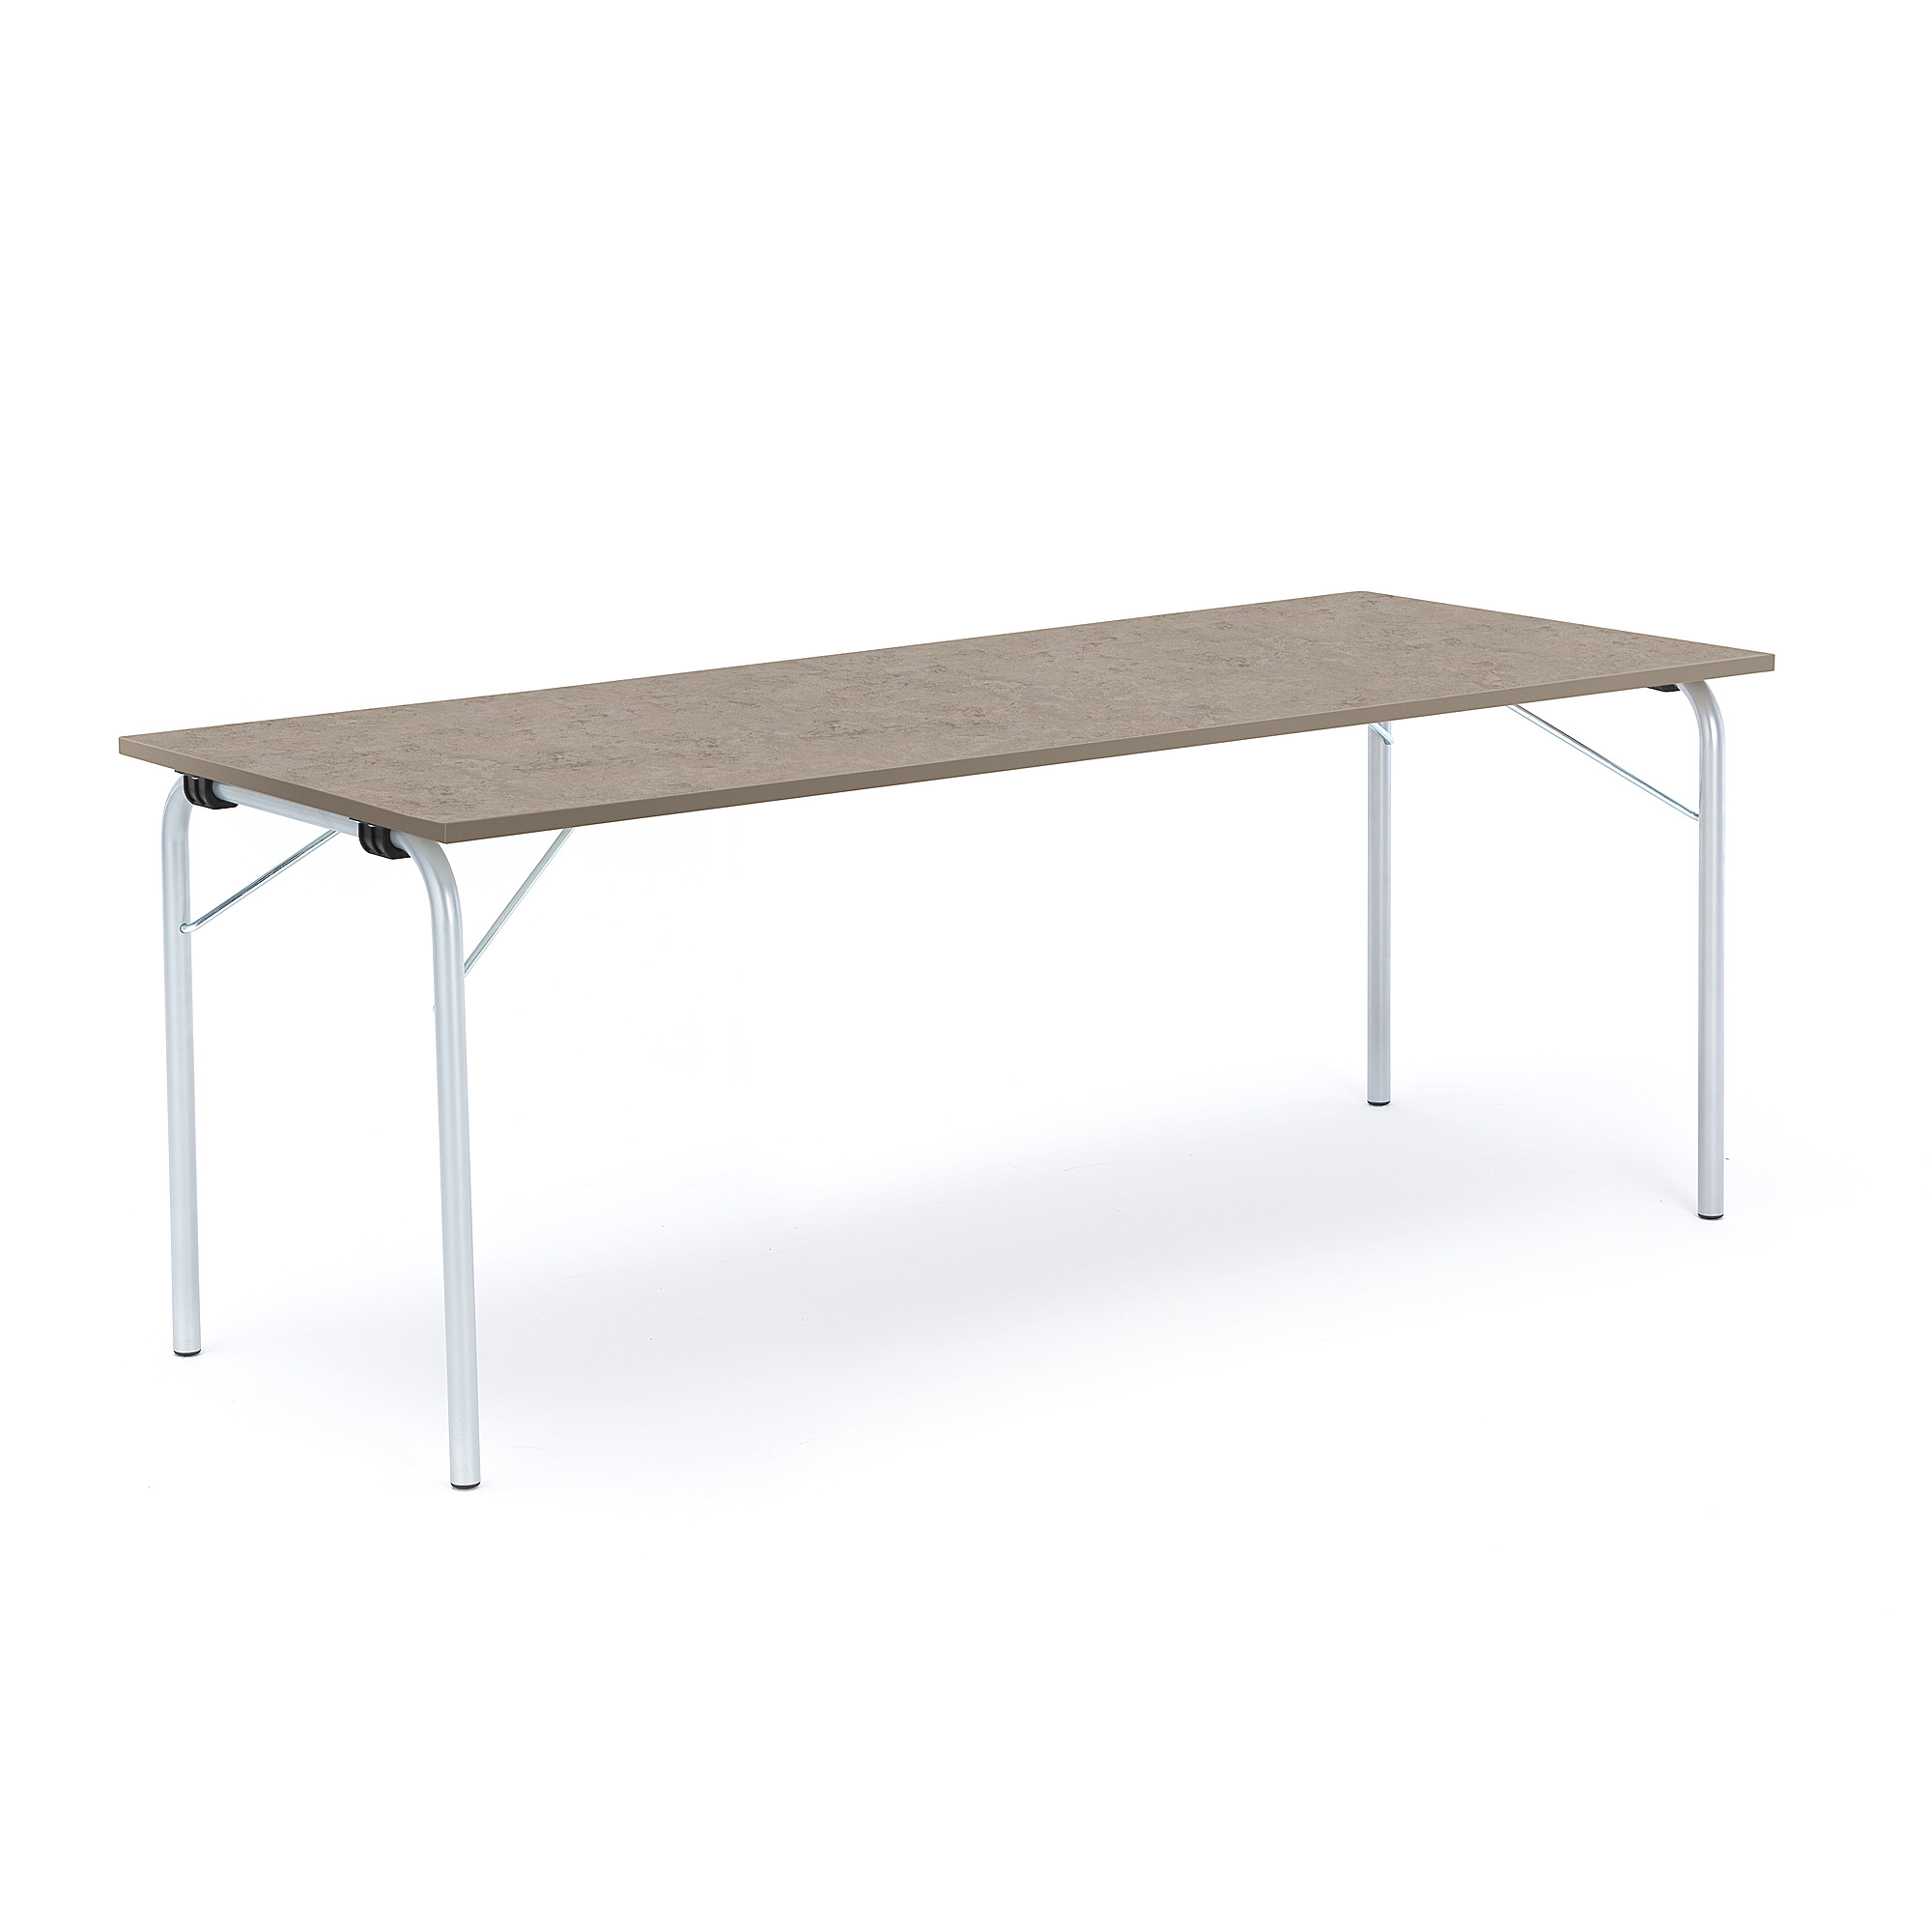 Skládací stůl NICKE, 1800x700x720 mm, stříbrný rám, světle šedé linoleum